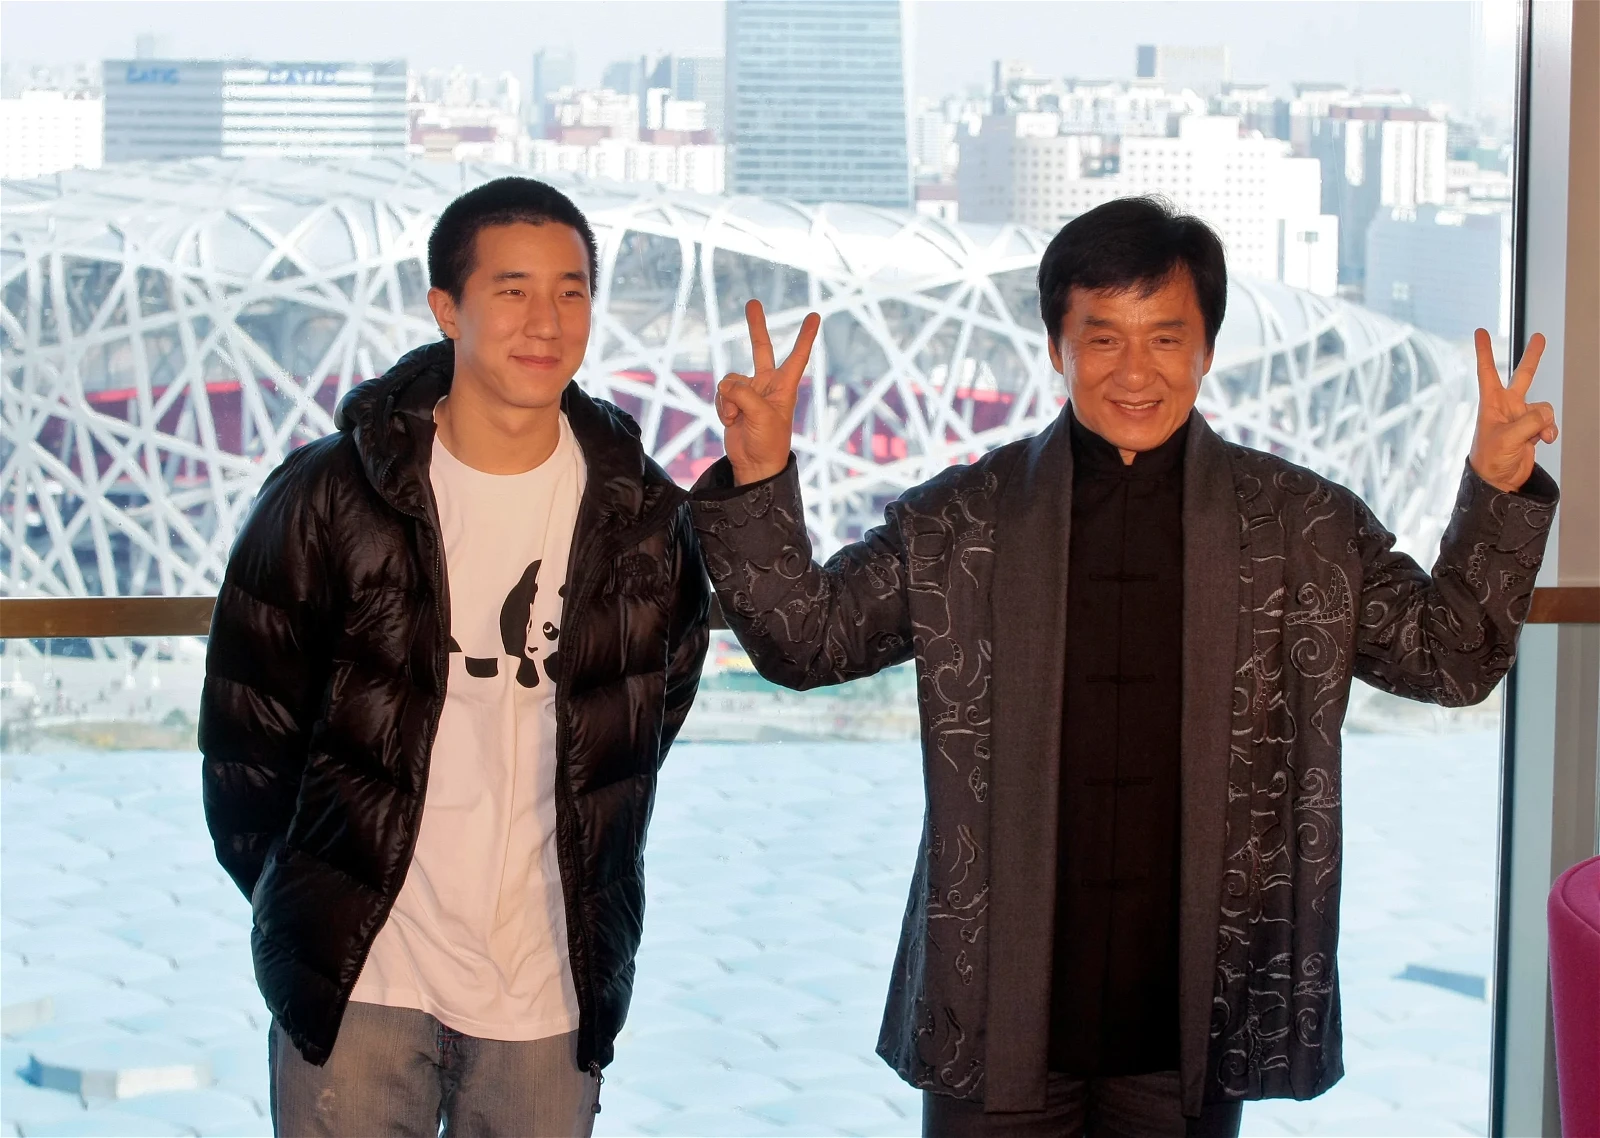 Jackie Chan and Jaycee Chan